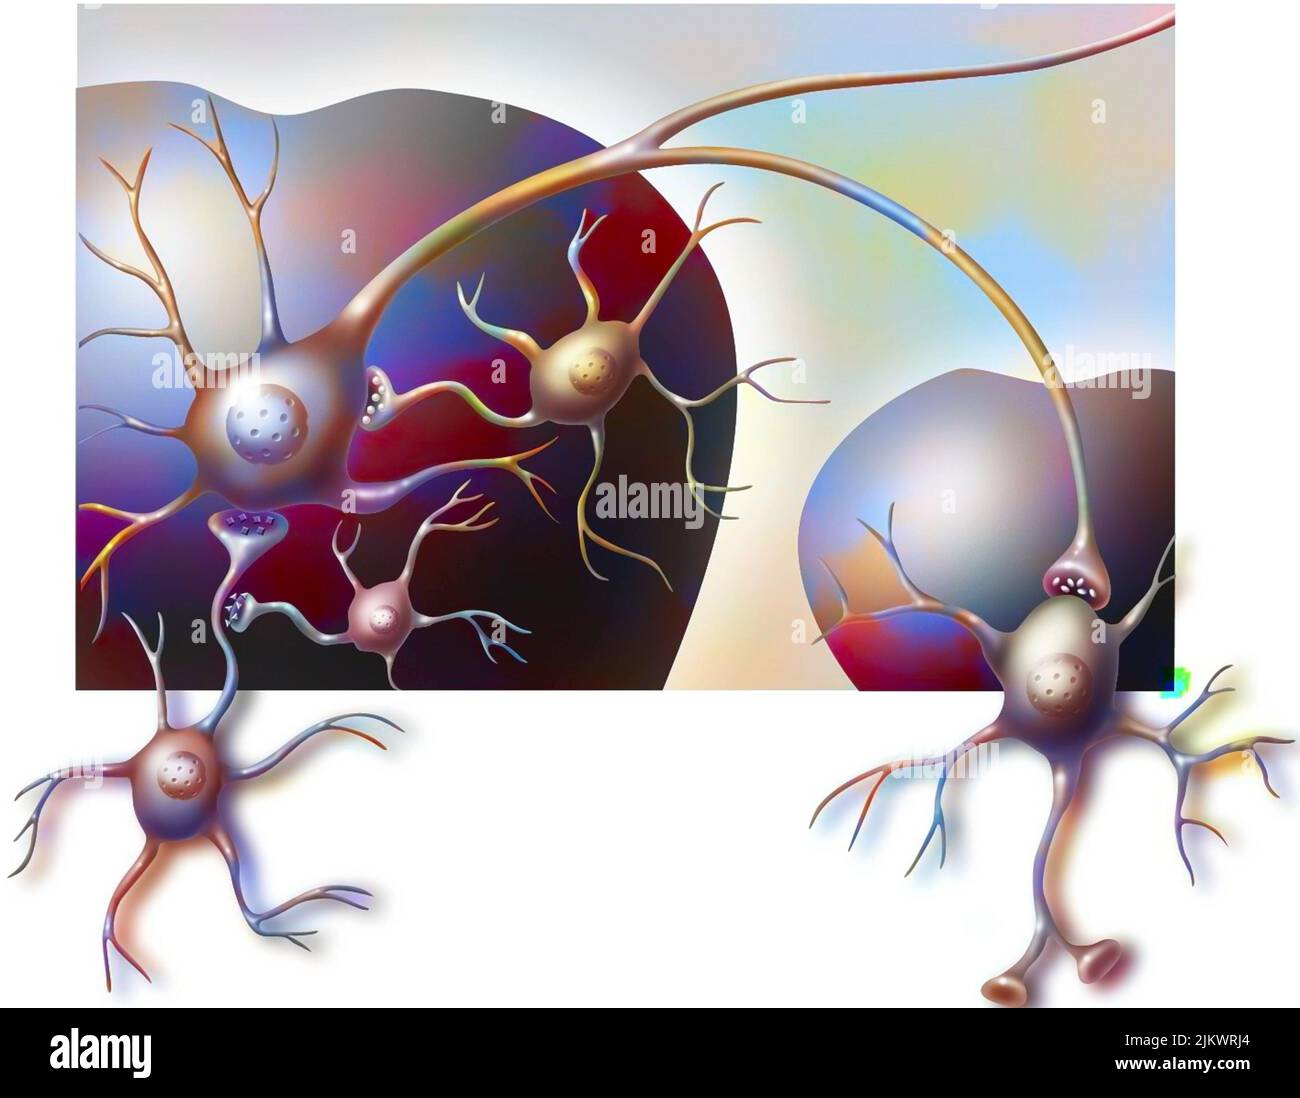 Die ventrale Tegmentregion des Gehirns und des Kerns akkumbt sich mit ihren Neuronen. Stockfoto